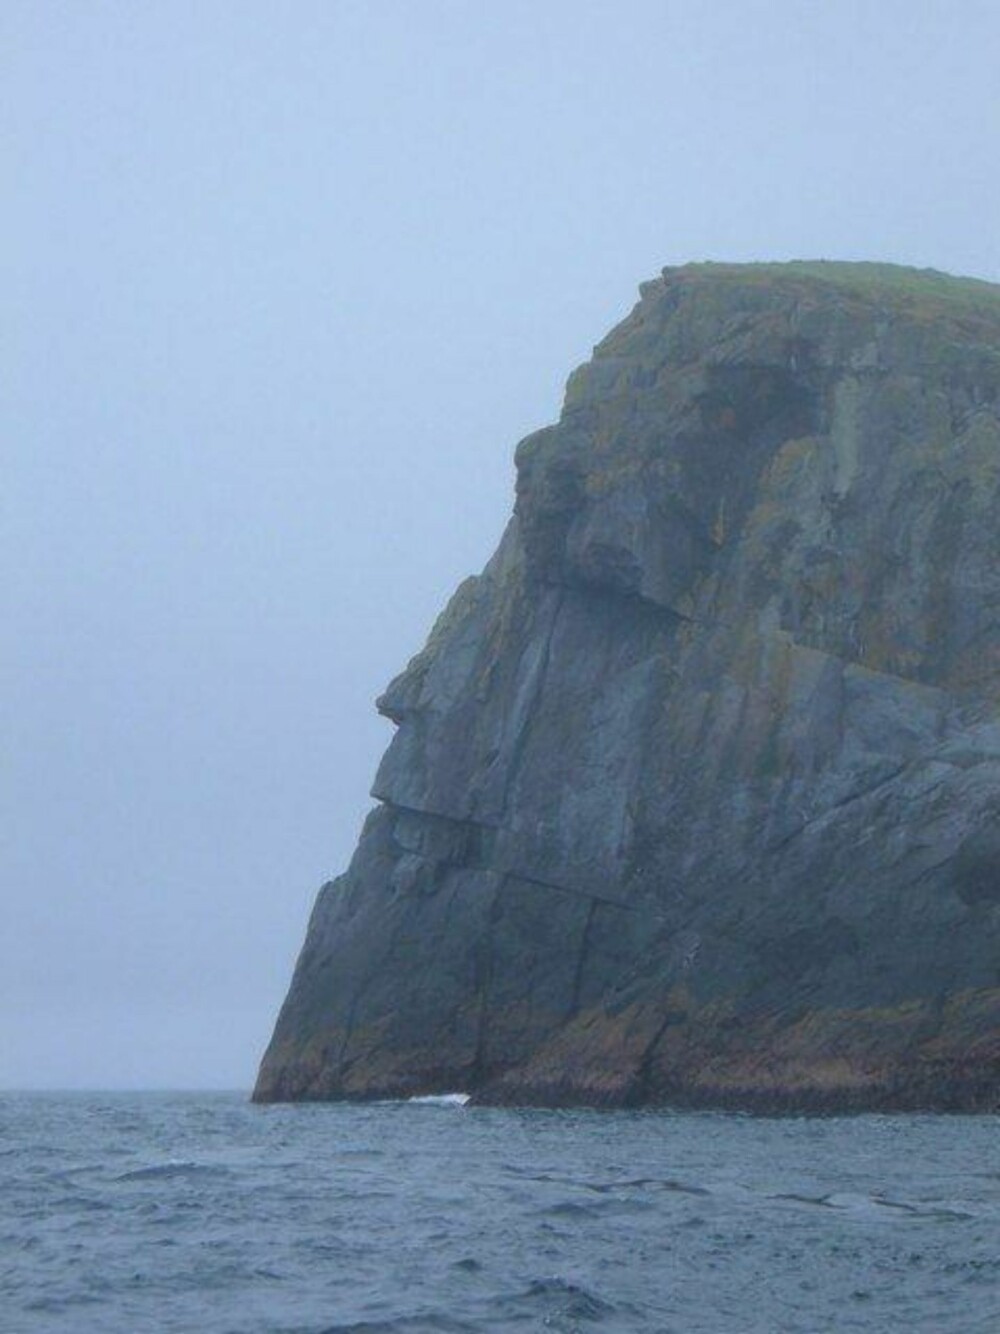 HARDE FORHOLD: Livet på St. Kilda var ingen spøk. Øygruppa har noen av Storbritannias høyeste og bratteste klipper. Her et bilde av den 62 meter høye klippen Stac Levenish.